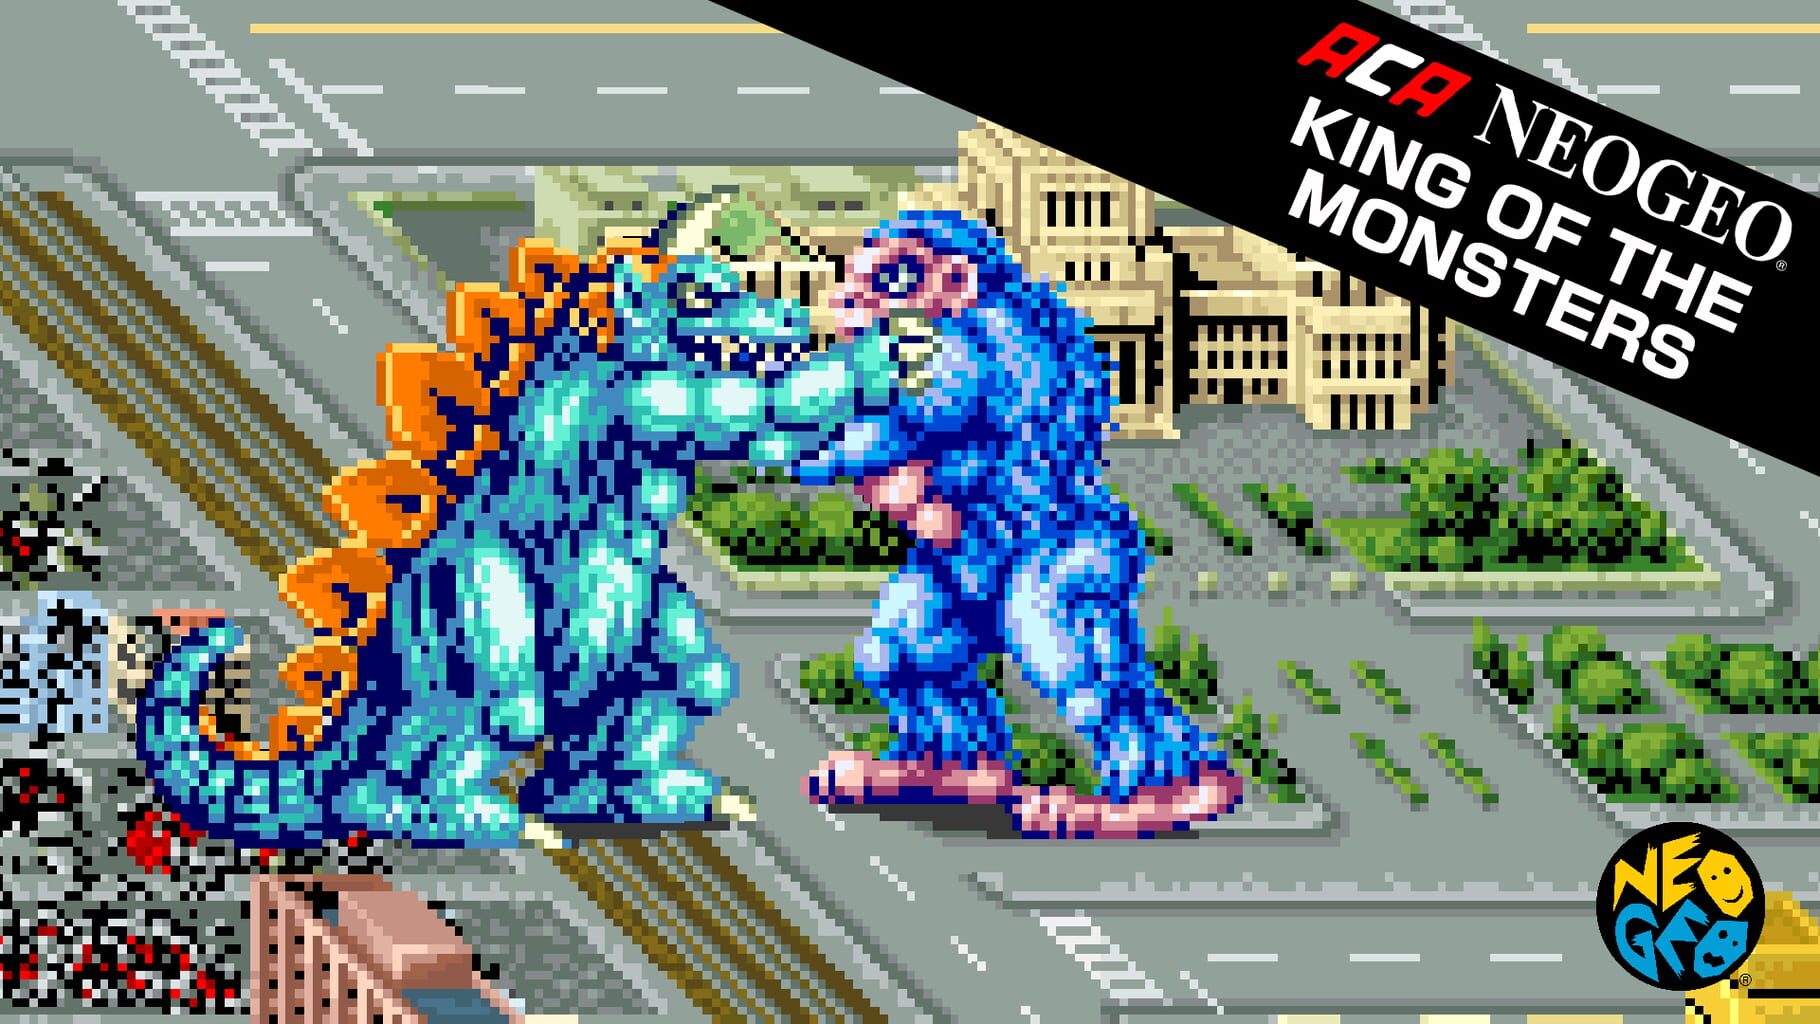 ACA Neo Geo: King of the Monsters artwork